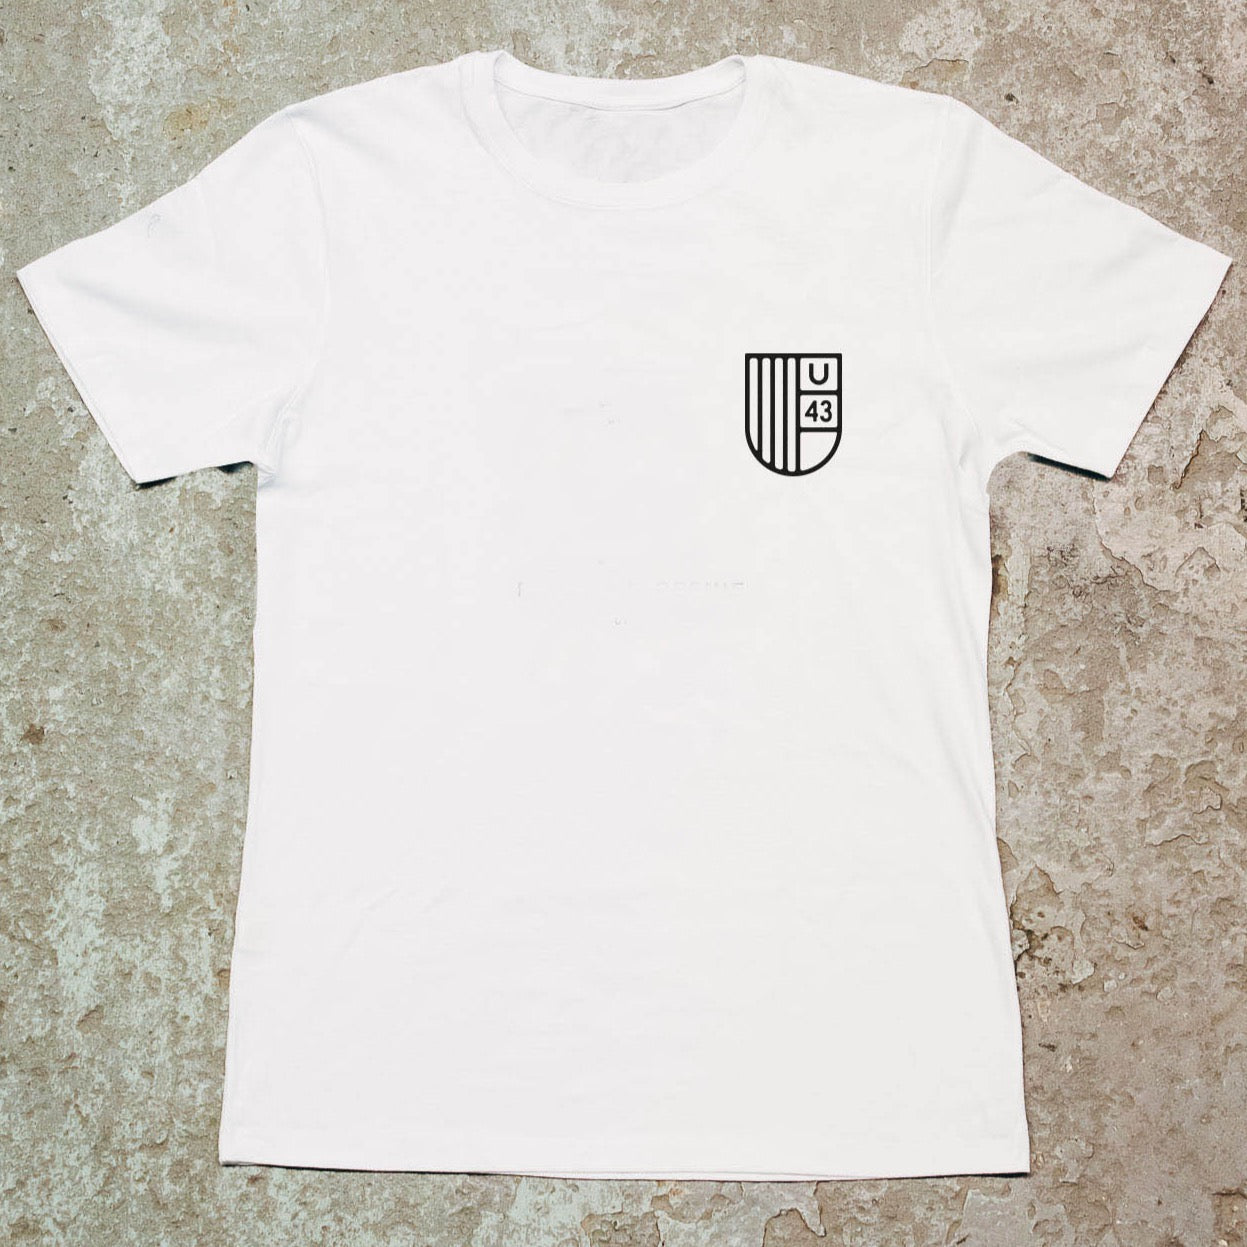 
                  
                    Unit 43 White T-Shirt
                  
                